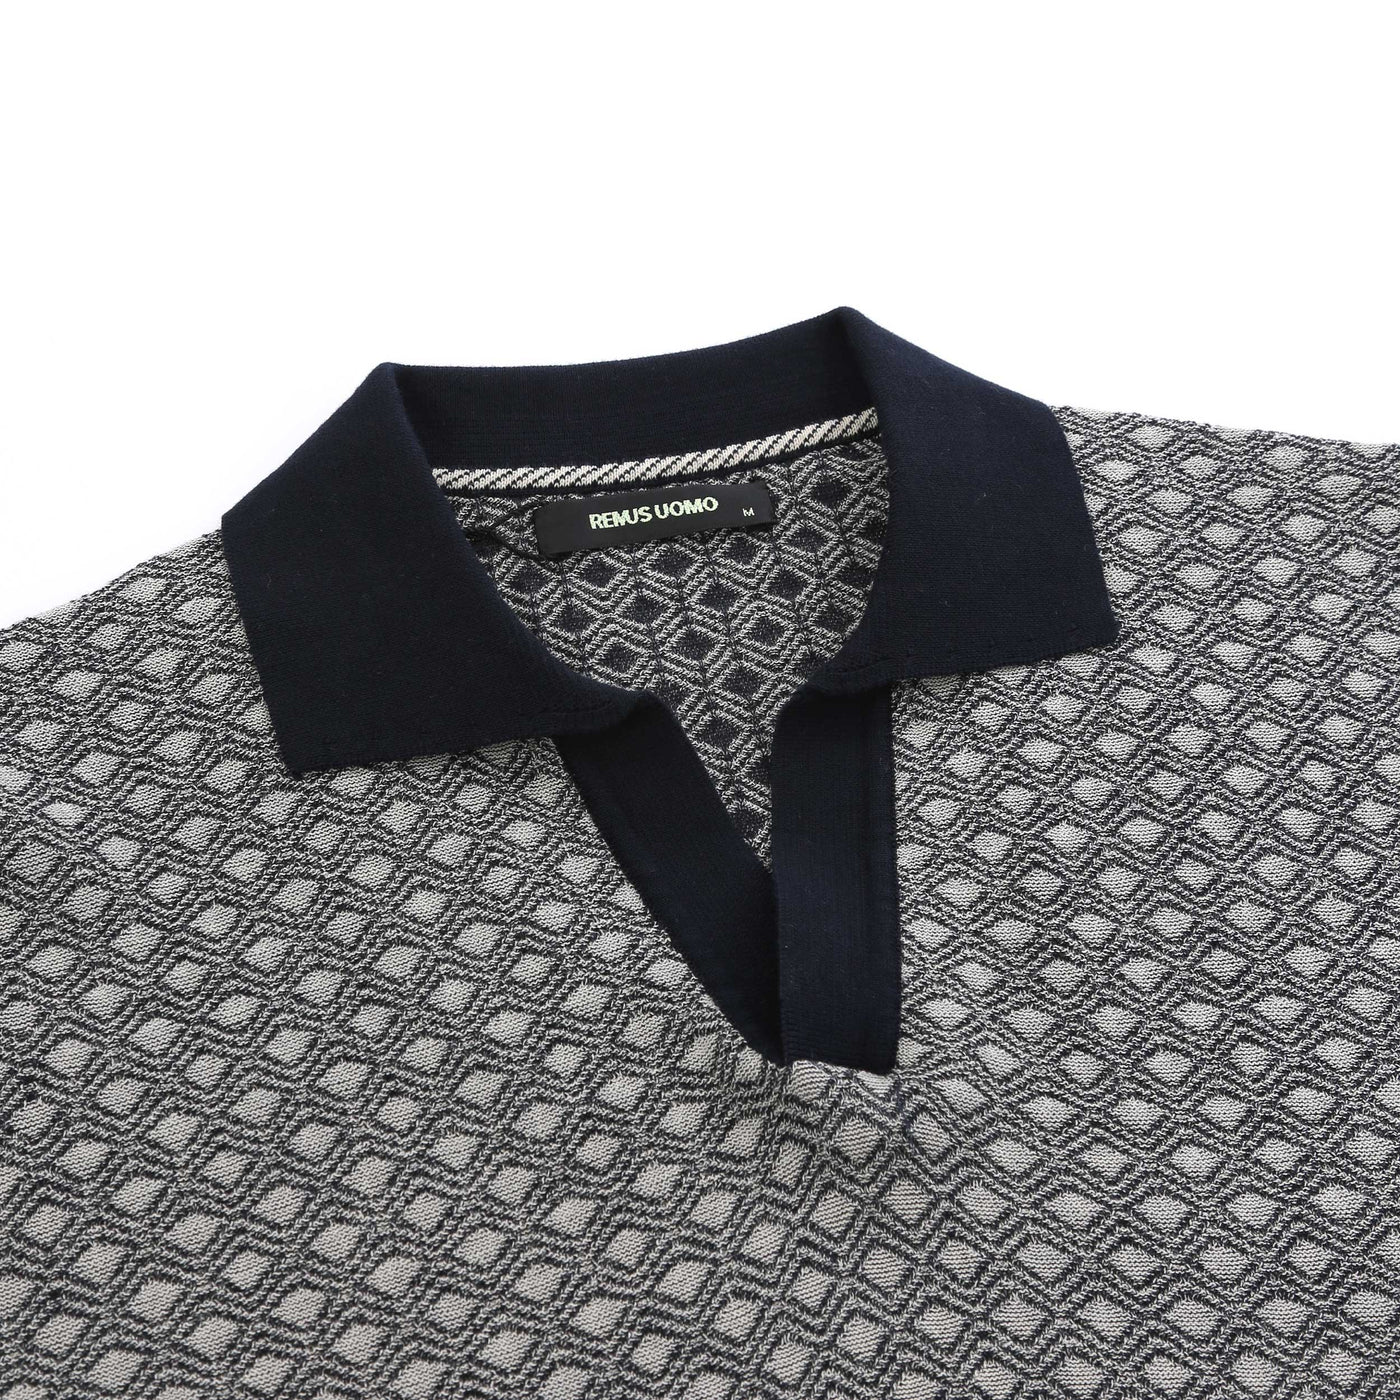 Remus Uomo Open Collar Jacquard Polo Shirt in Navy & Beige Collar